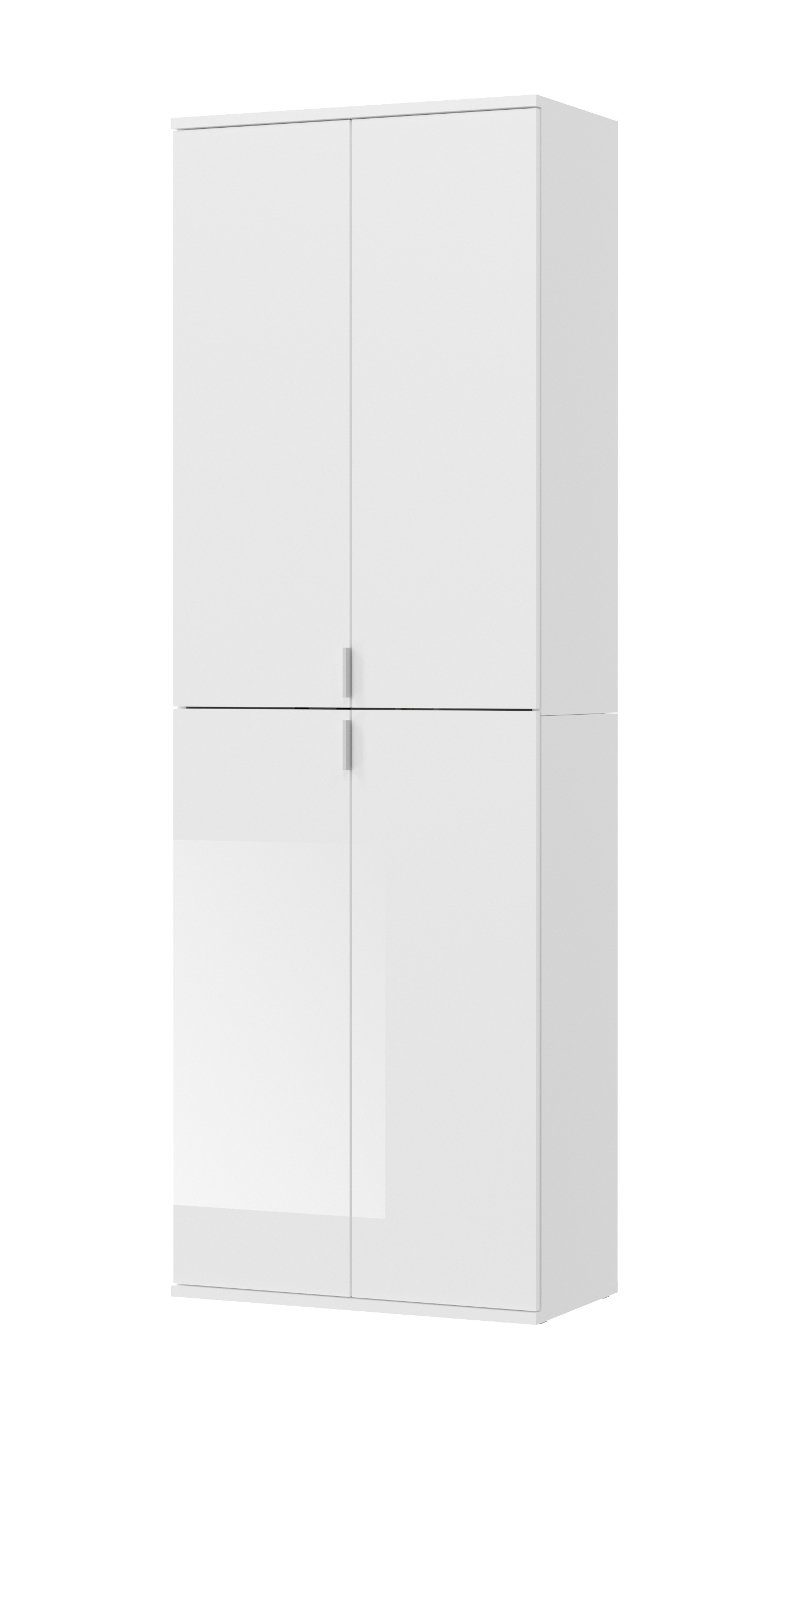 xonox.home Schuhschrank ProjektX (Schuhschrank und Garderobe in weiß Hochglanz, 61x193 cm) mit variabler Inneneinteilung